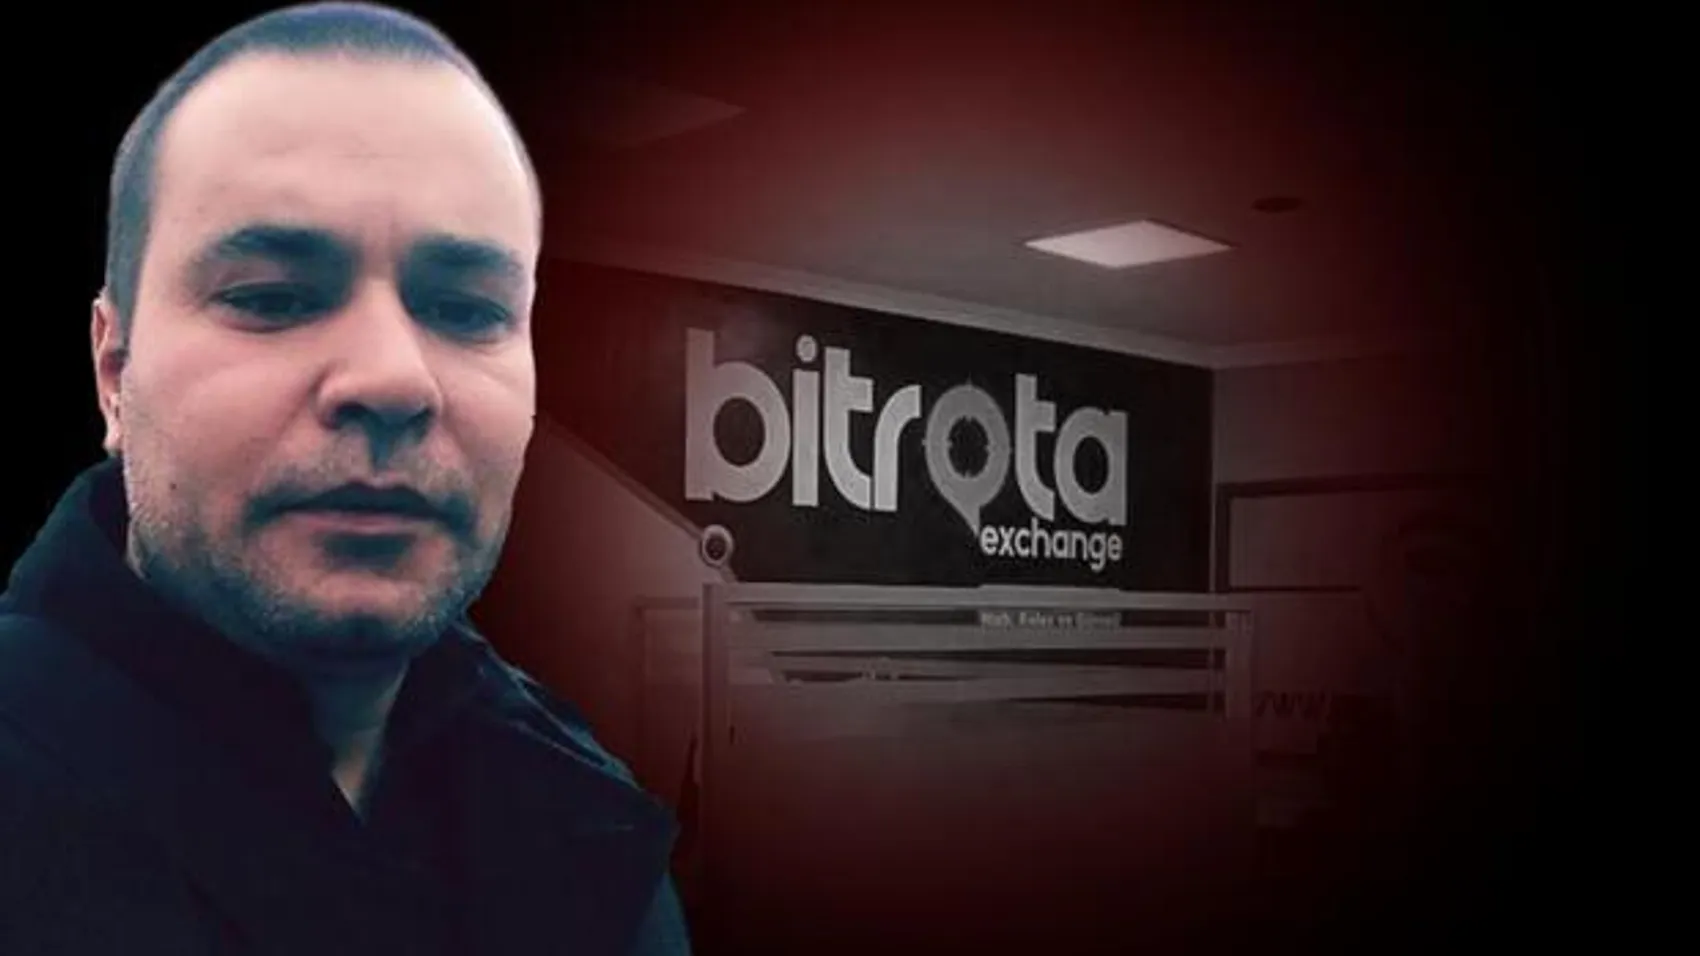 Kripto para vurgununda flaş gelişme! Bitrota soruşturmasında 2 kişiye yakalama kararı